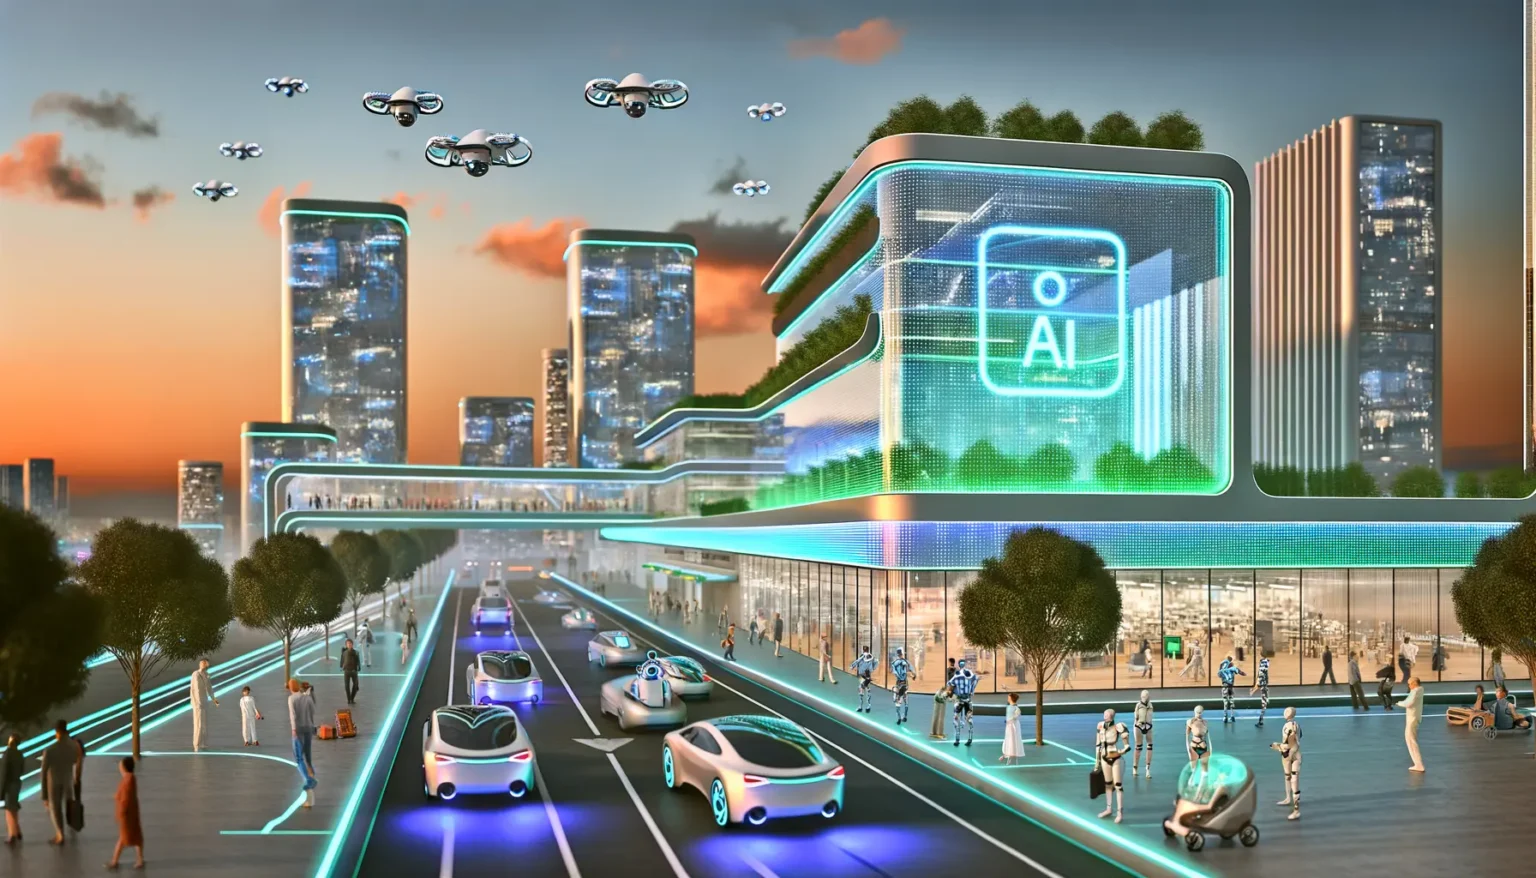 Illustration einer futuristischen Stadt bei Sonnenuntergang mit hohen Gebäuden und einem großen digitalen Konglomerat, das KI (Künstliche Intelligenz) symbolisiert. Die Straßen sind gefüllt mit autonom fahrenden Autos, und der Himmel ist bevölkert von fliegenden Fahrzeugen. Menschen und humanoide Roboter interagieren in einer harmonischen Umgebung, die reich an Natur und moderner Technologie ist.